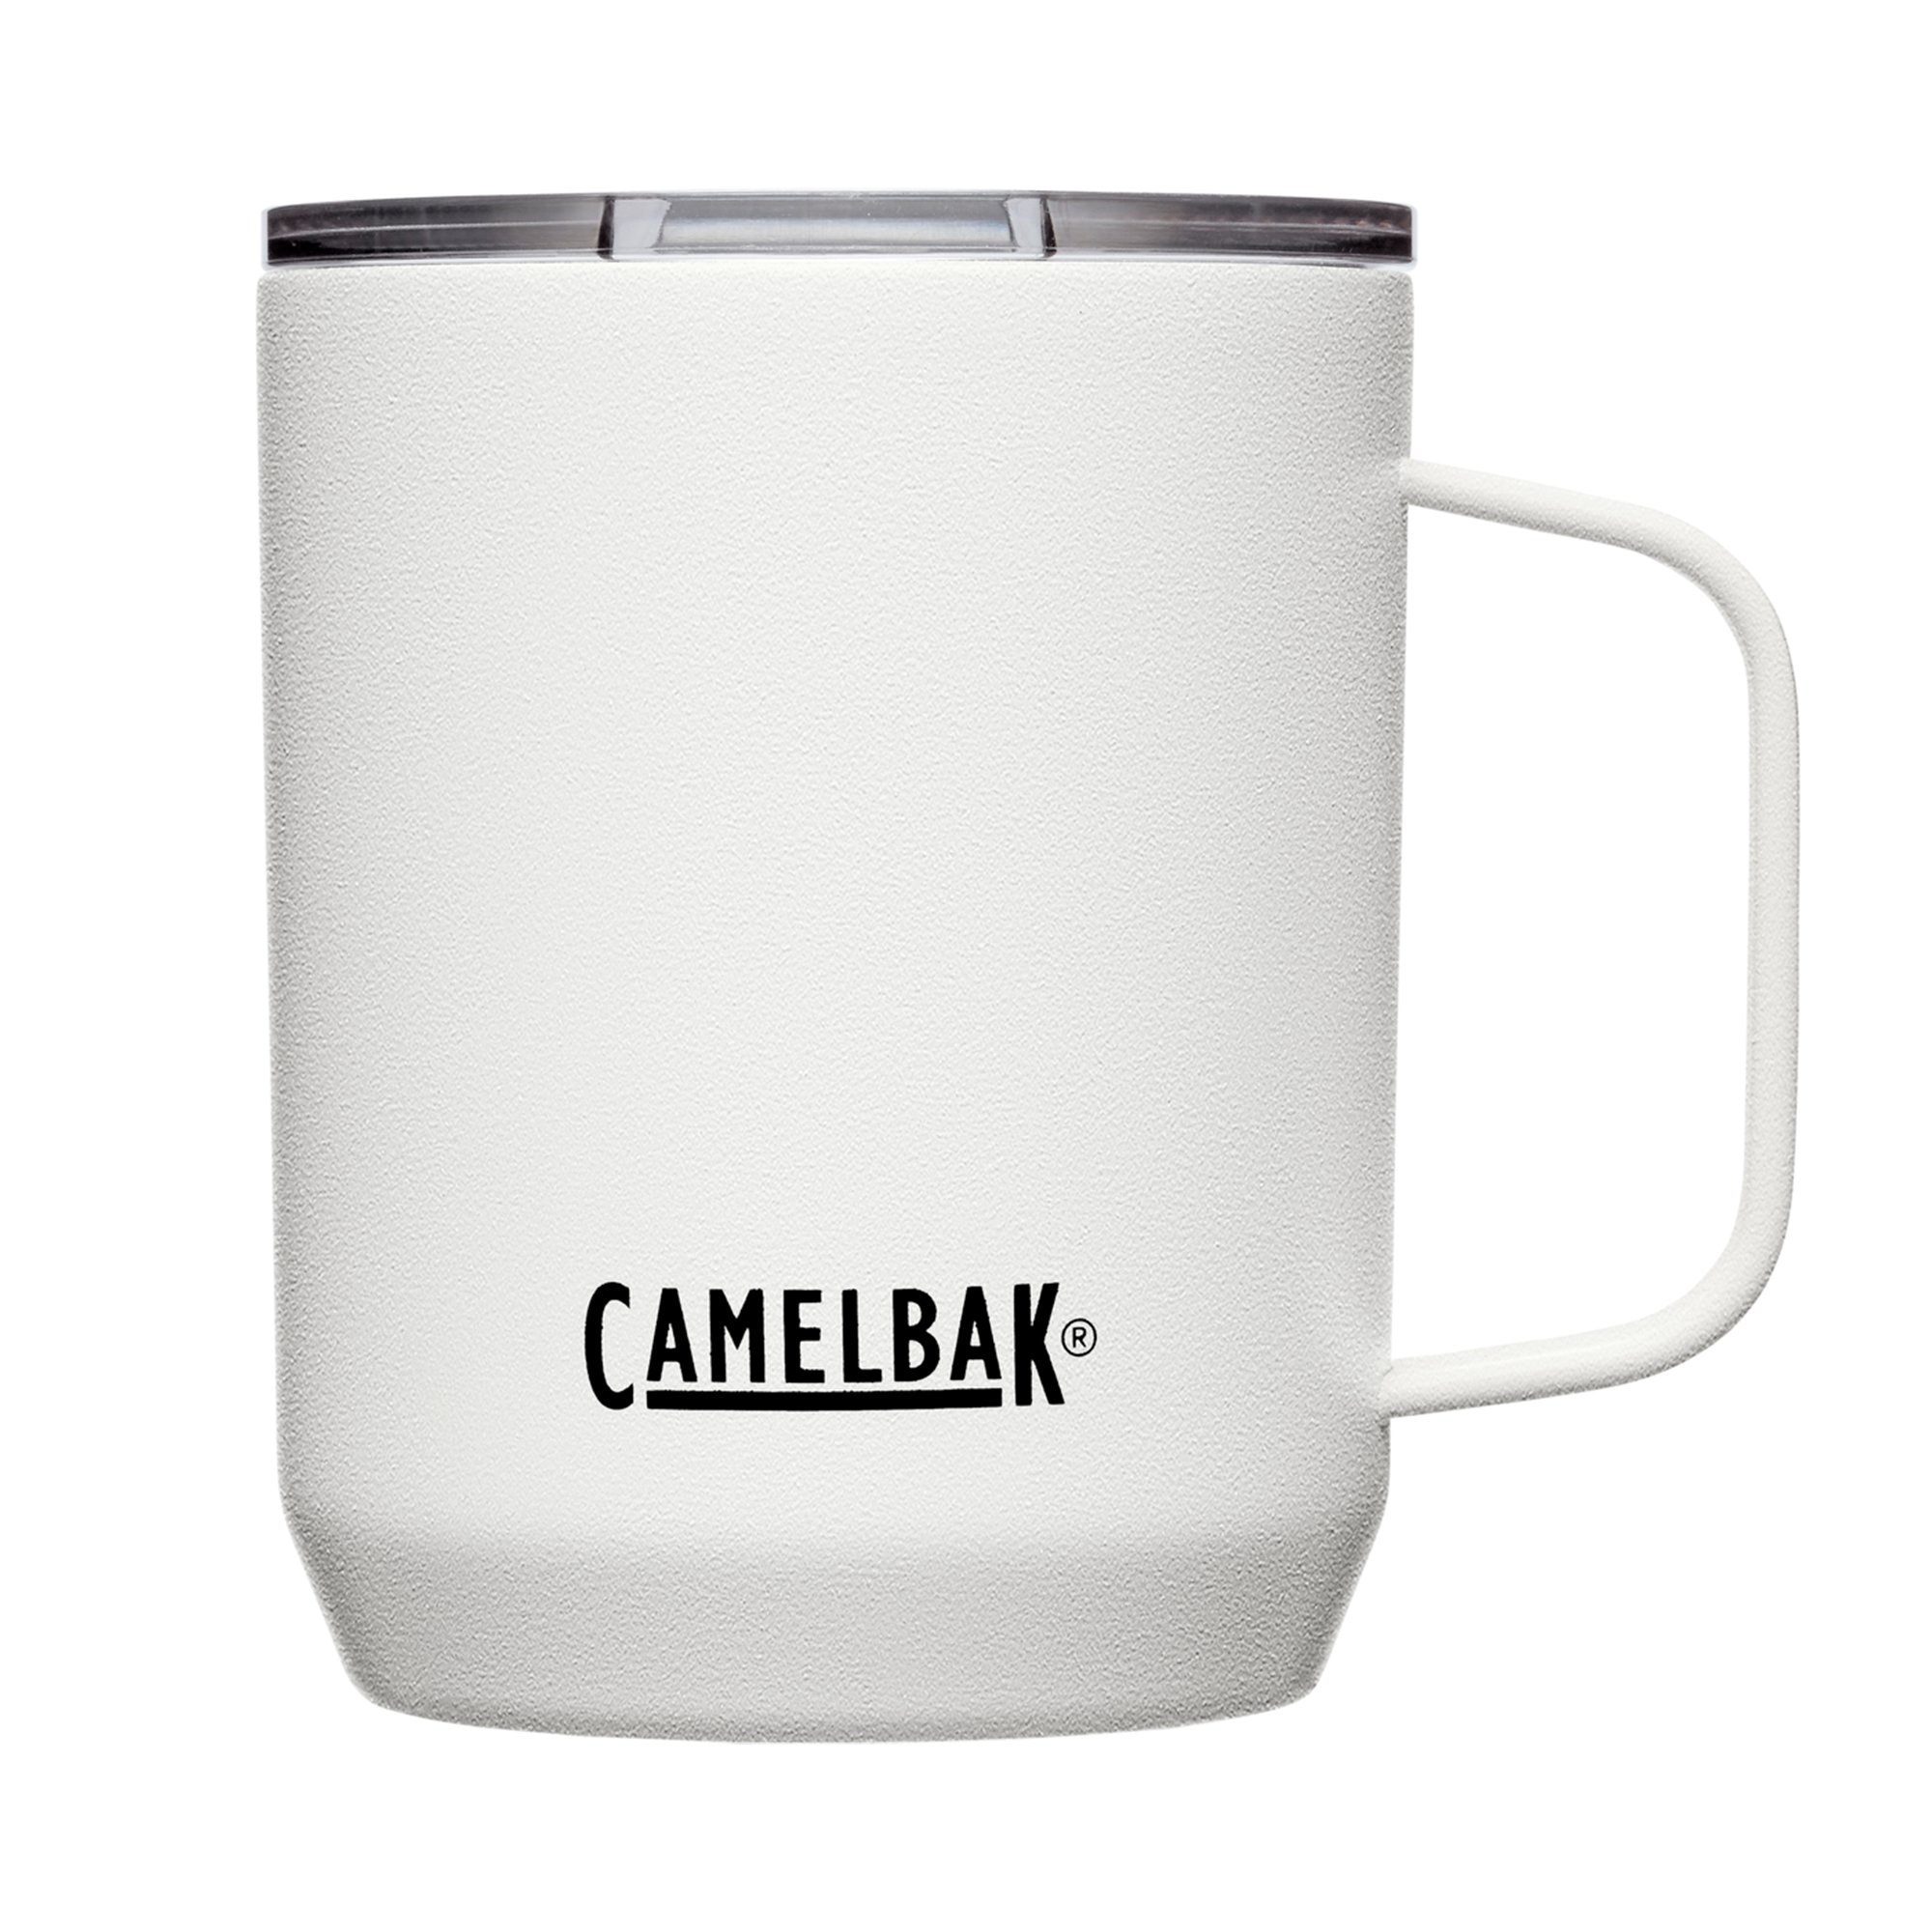 Camelbak Termokrus 0.35 liter, white